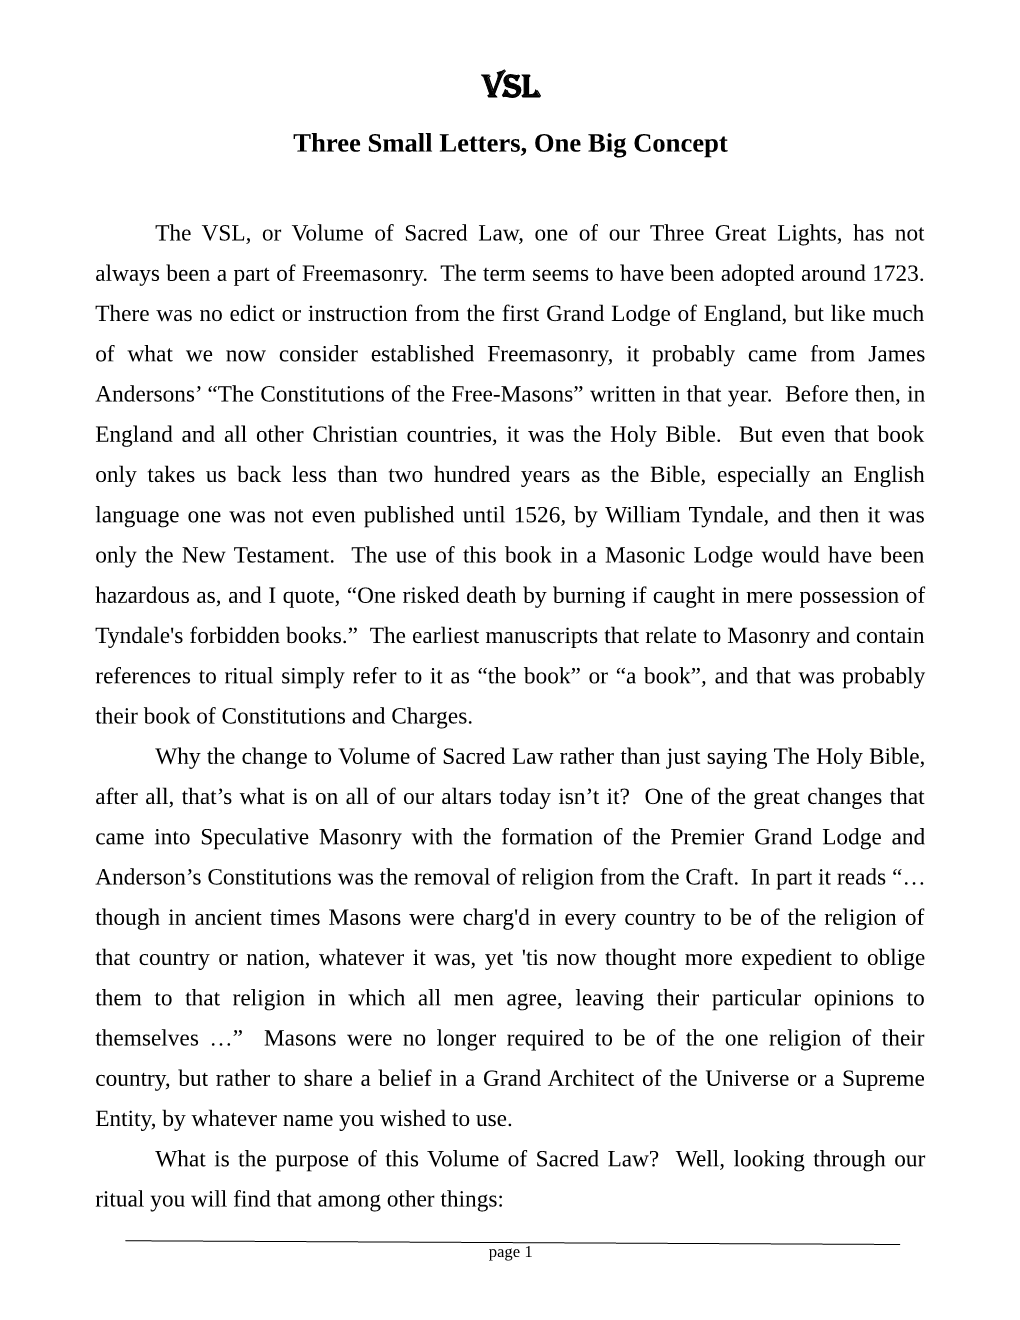 The Volume of Sacred Law (VSL)